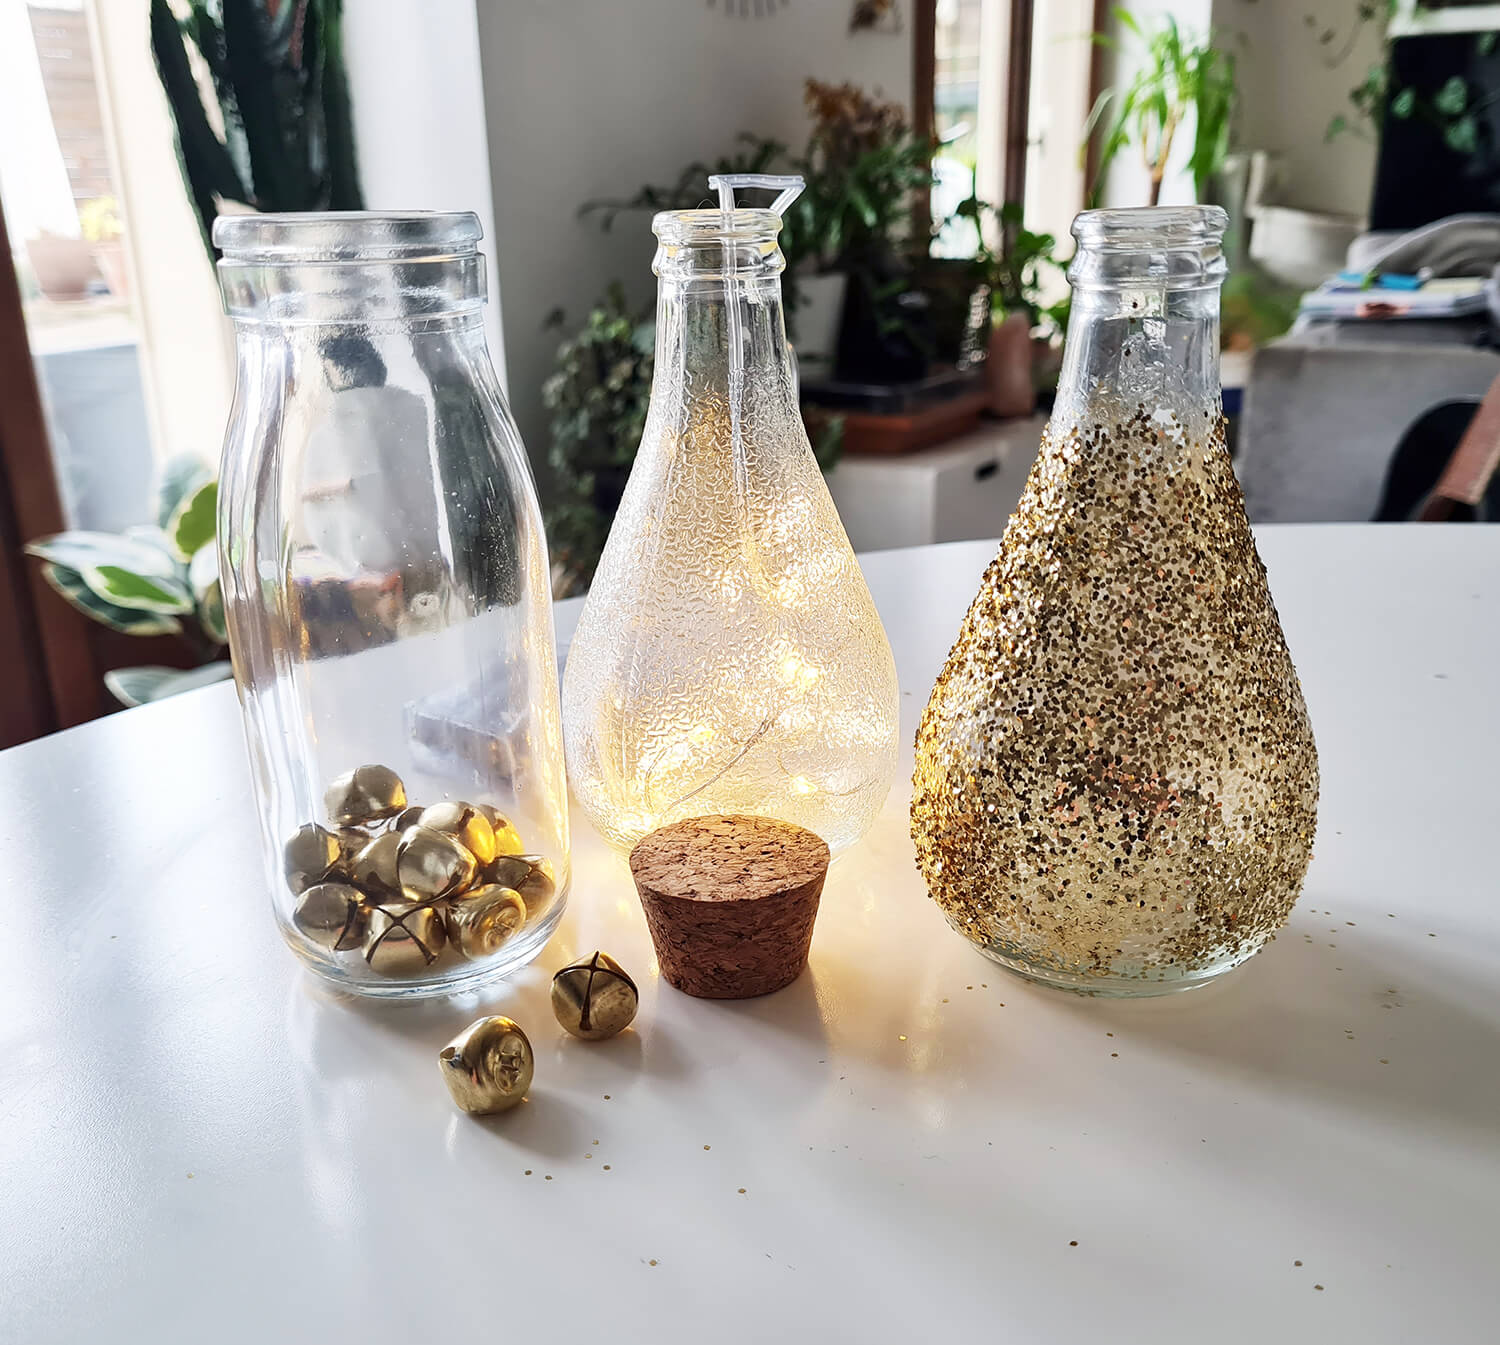 20201211 134033 - DIY festif : recycler des bouteilles en verre pour décorer la table des fêtes